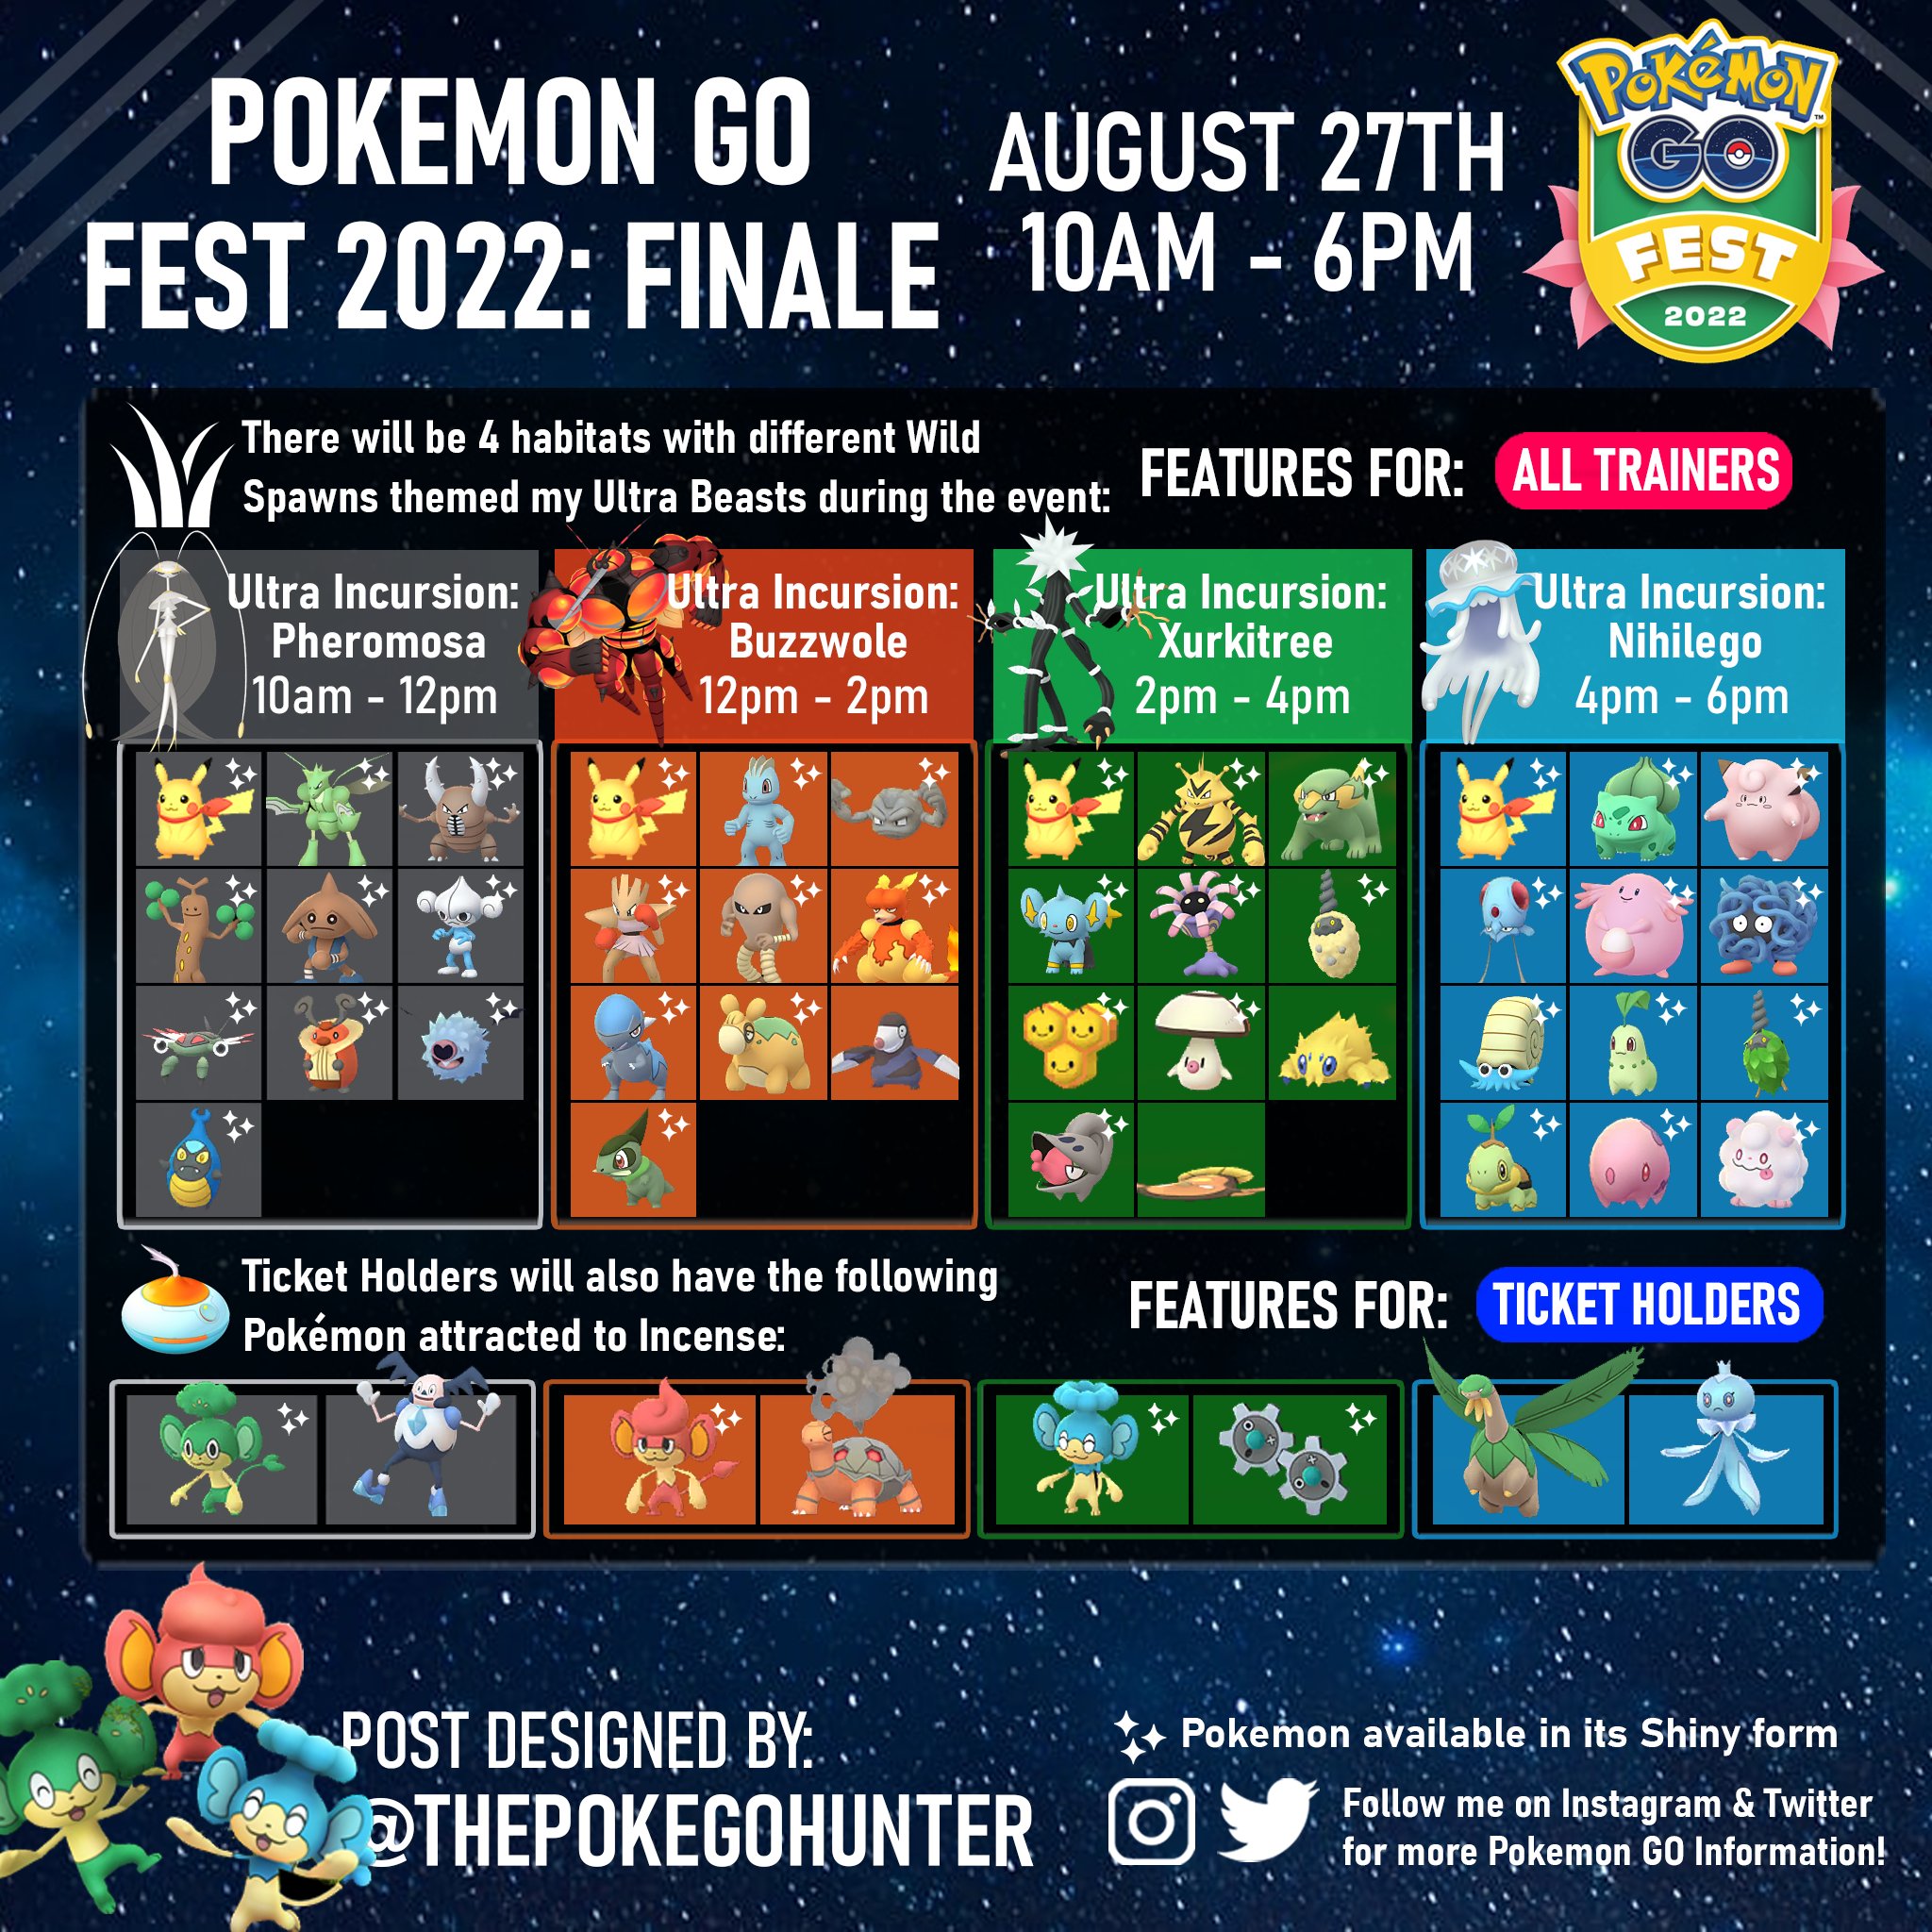 Jogada Excelente on X: #PokémonGO: Durante o evento final do GO Fest 2022,  que acontece nesse sábado, 27 de agosto, Reides com Ultracriaturas  aparecerão em diferentes horários: 🪳 Pheromosa: 10h às 12h